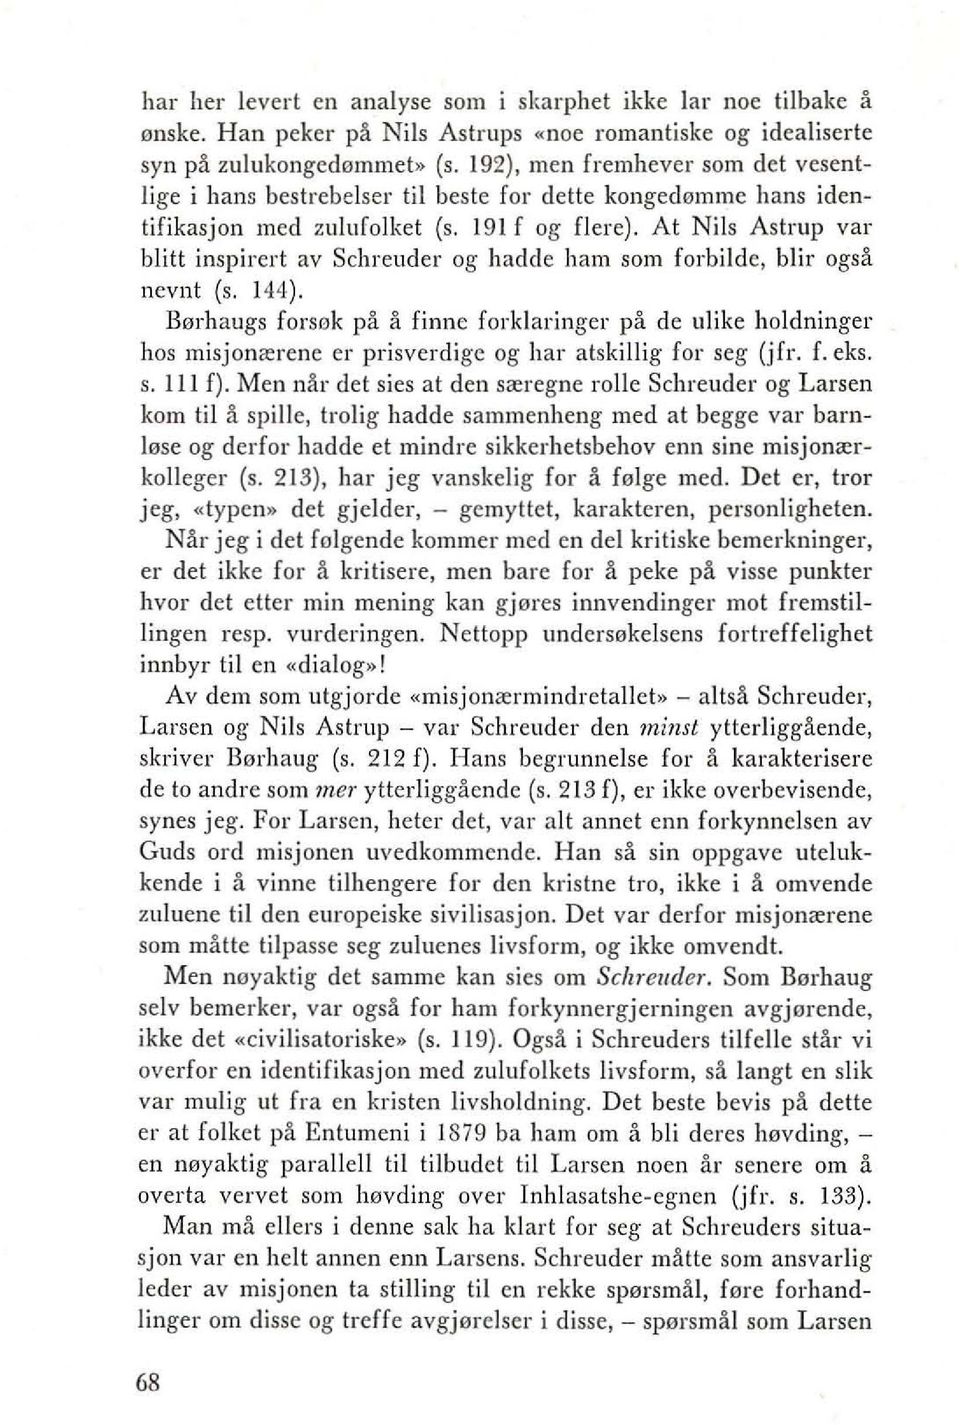 At Nils Astrup var blitt inspirert av Schreuder og hadde ham sam forbilde, blir ogsa nevnt (s. 144).